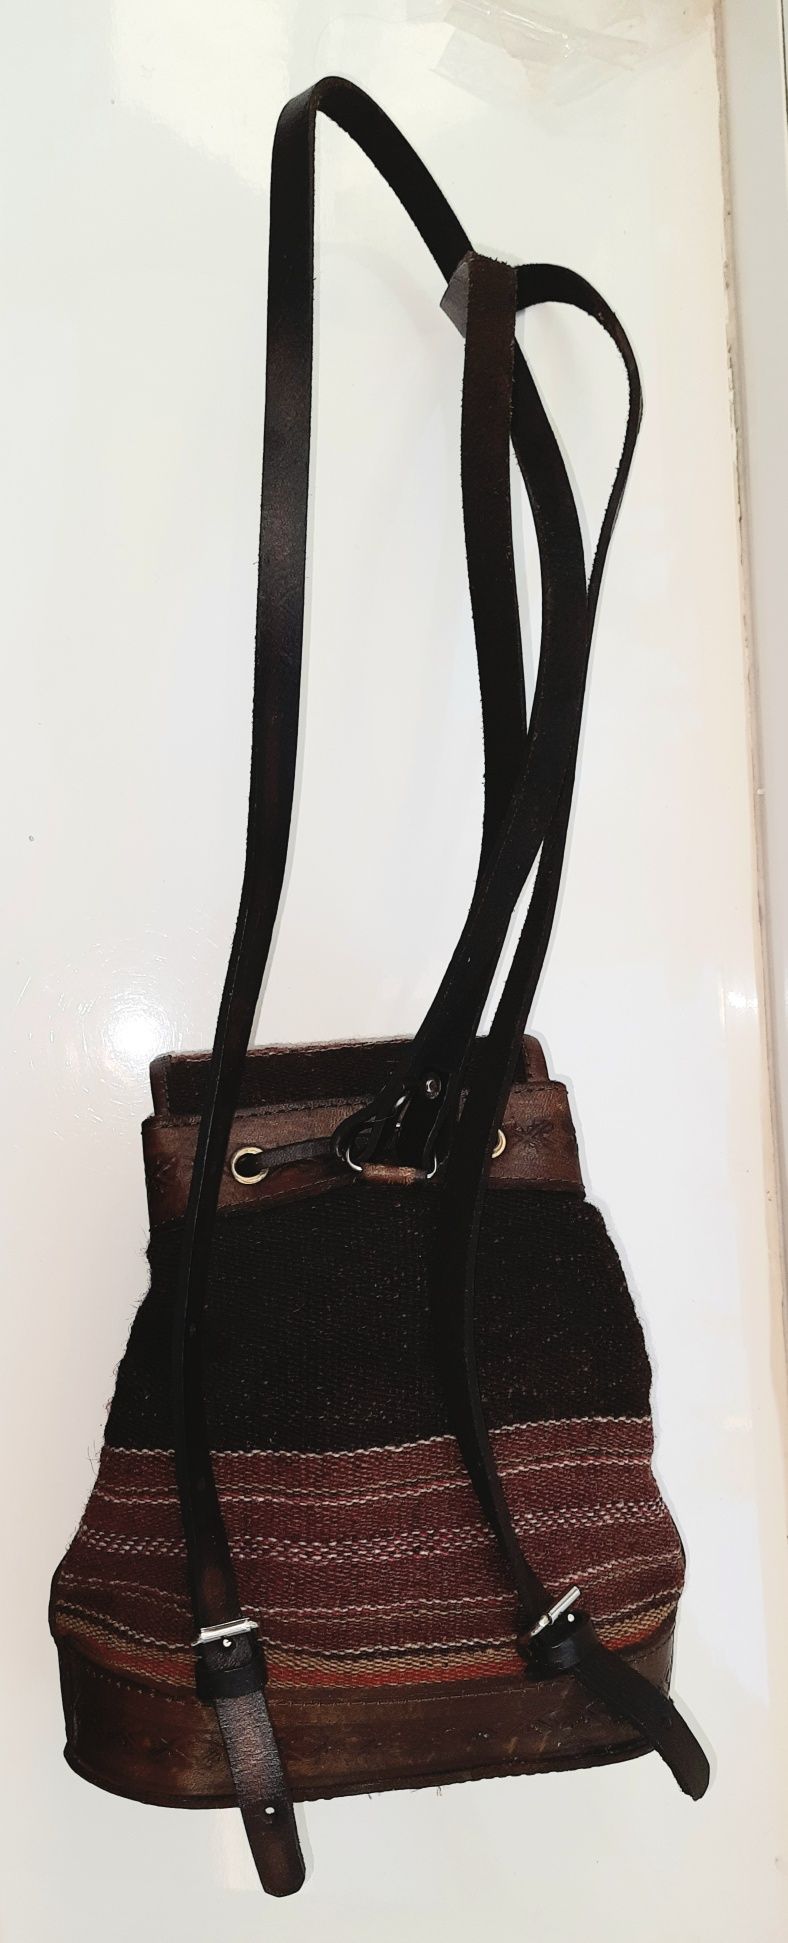 рюкзак небольшой handmade кожаный шерсть ткань карман бохо этно стиль